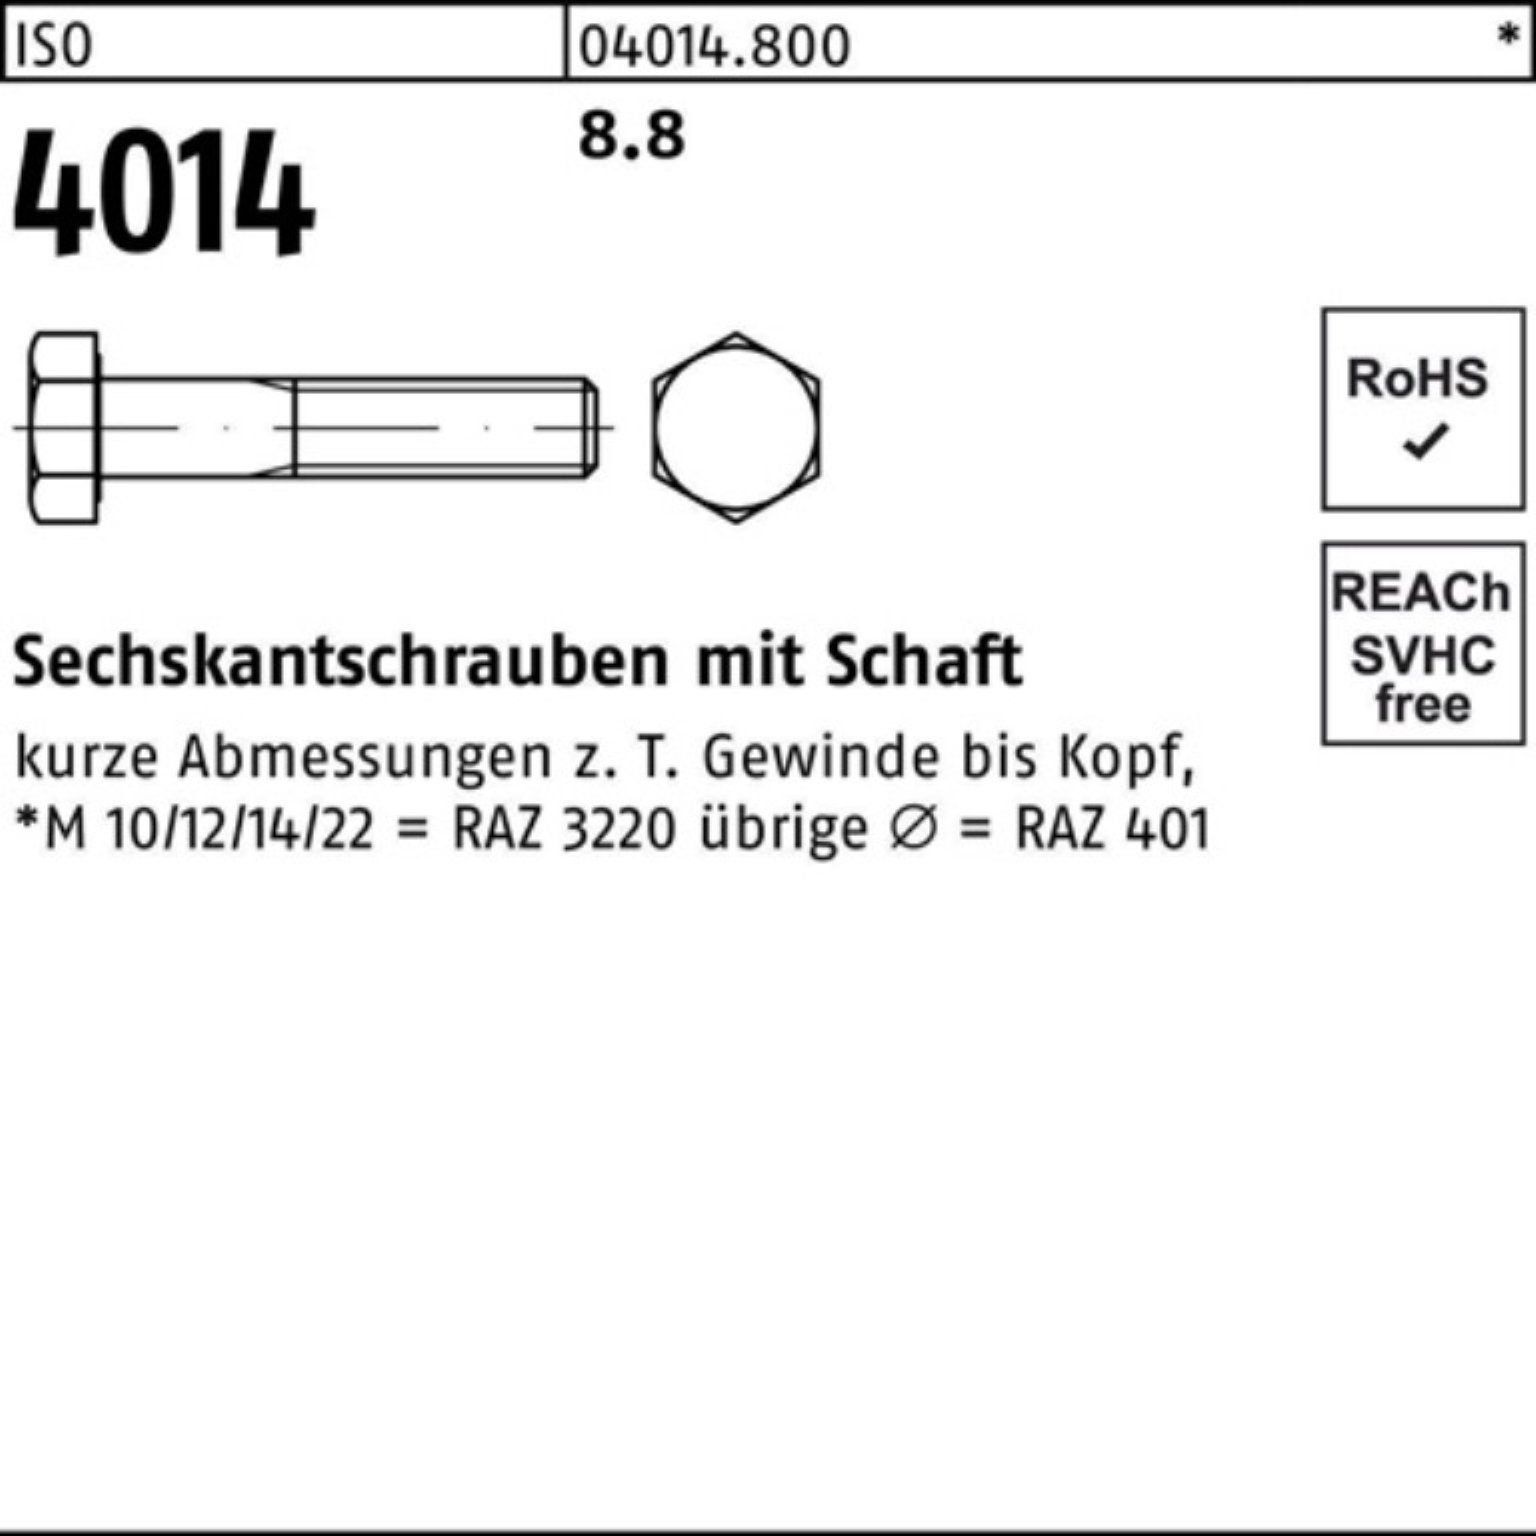 M27x Stück Sechskantschraube 10 8.8 100er ISO 4014 100 IS Bufab Pack Schaft Sechskantschraube